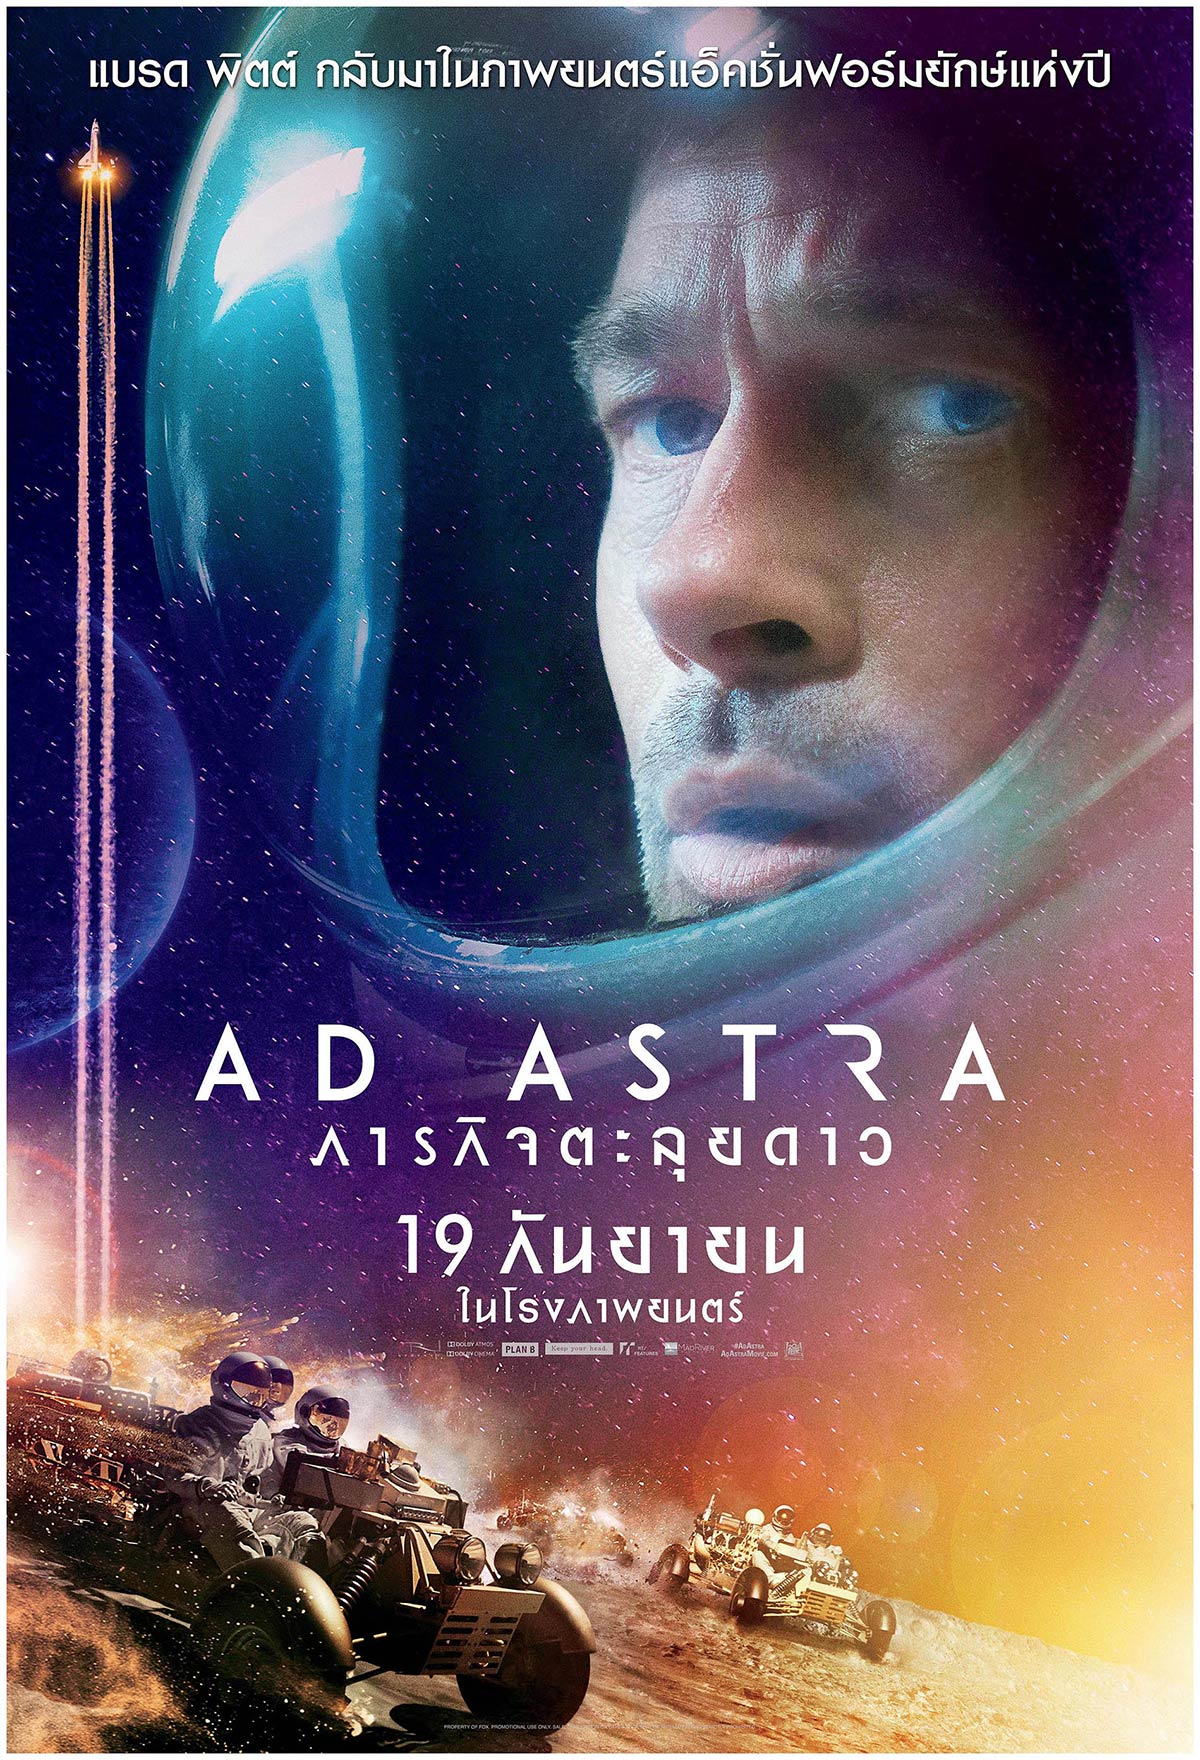 ดูหนังออนไลน์ AD ASTRA 2019 ภารกิจตะลุยดาว ดูหนัง netflix